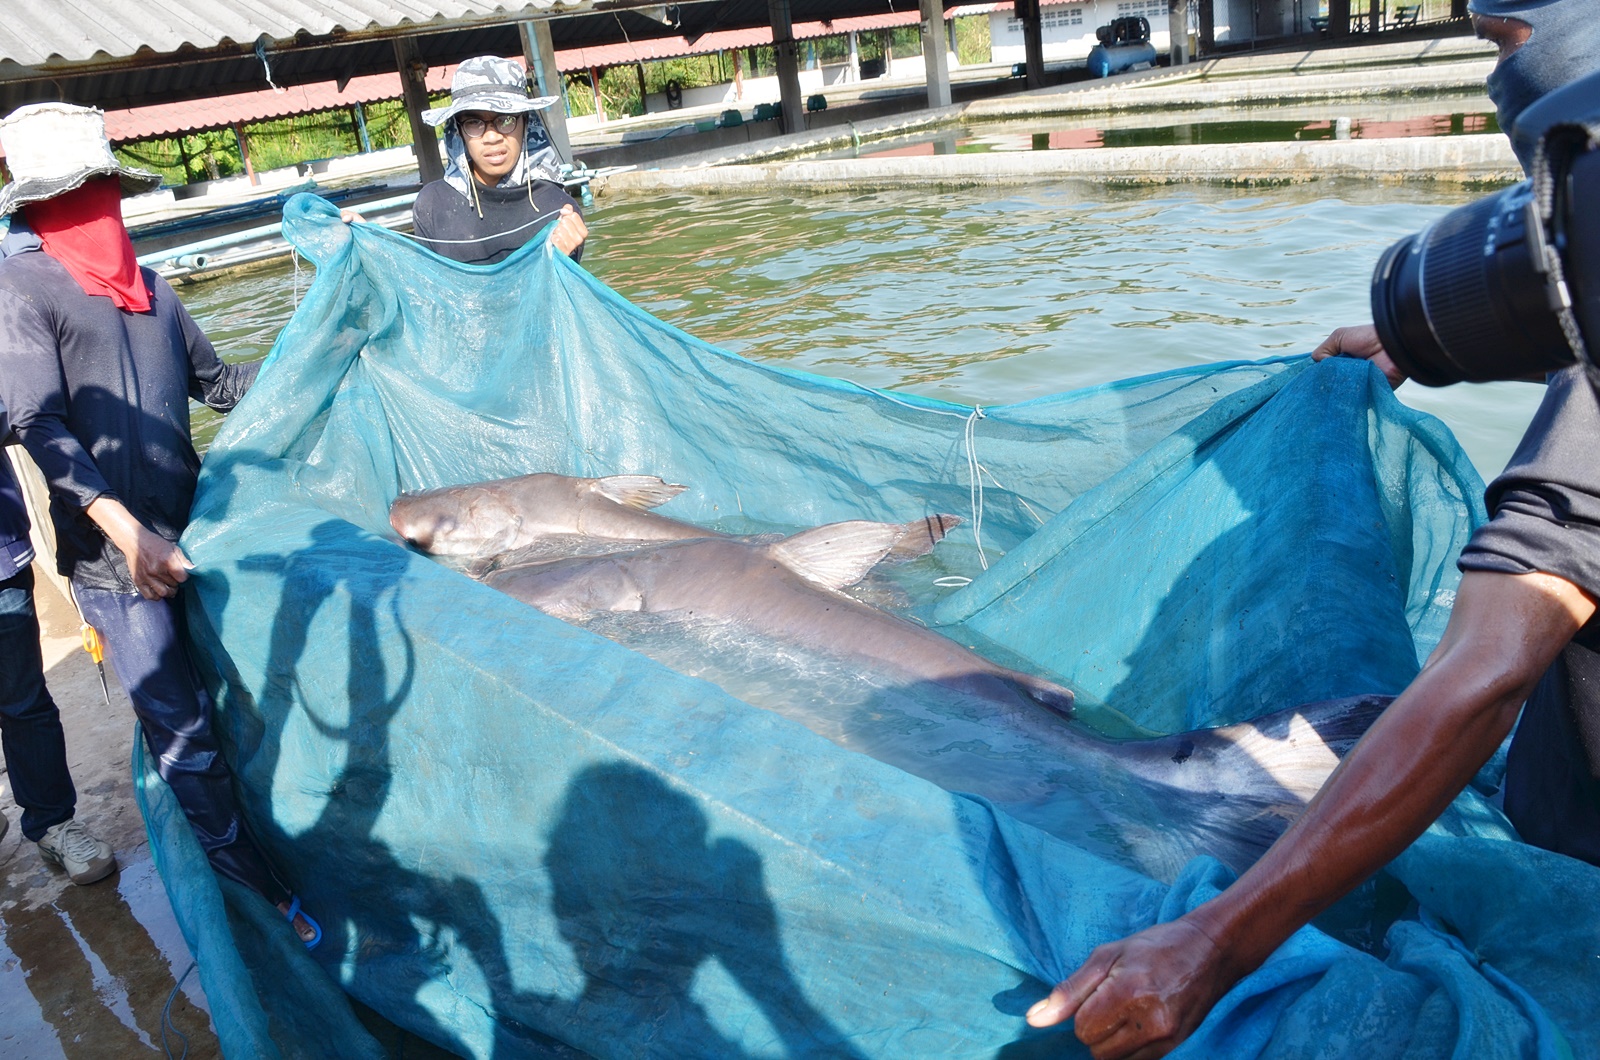 ยอดเยี่ยม! มทส.จับมือนักวิจัยญี่ปุ่น พัฒนา “ปลาอุ้มบุญ” ได้สำเร็จครั้งแรกของไทย (ชมคลิป)